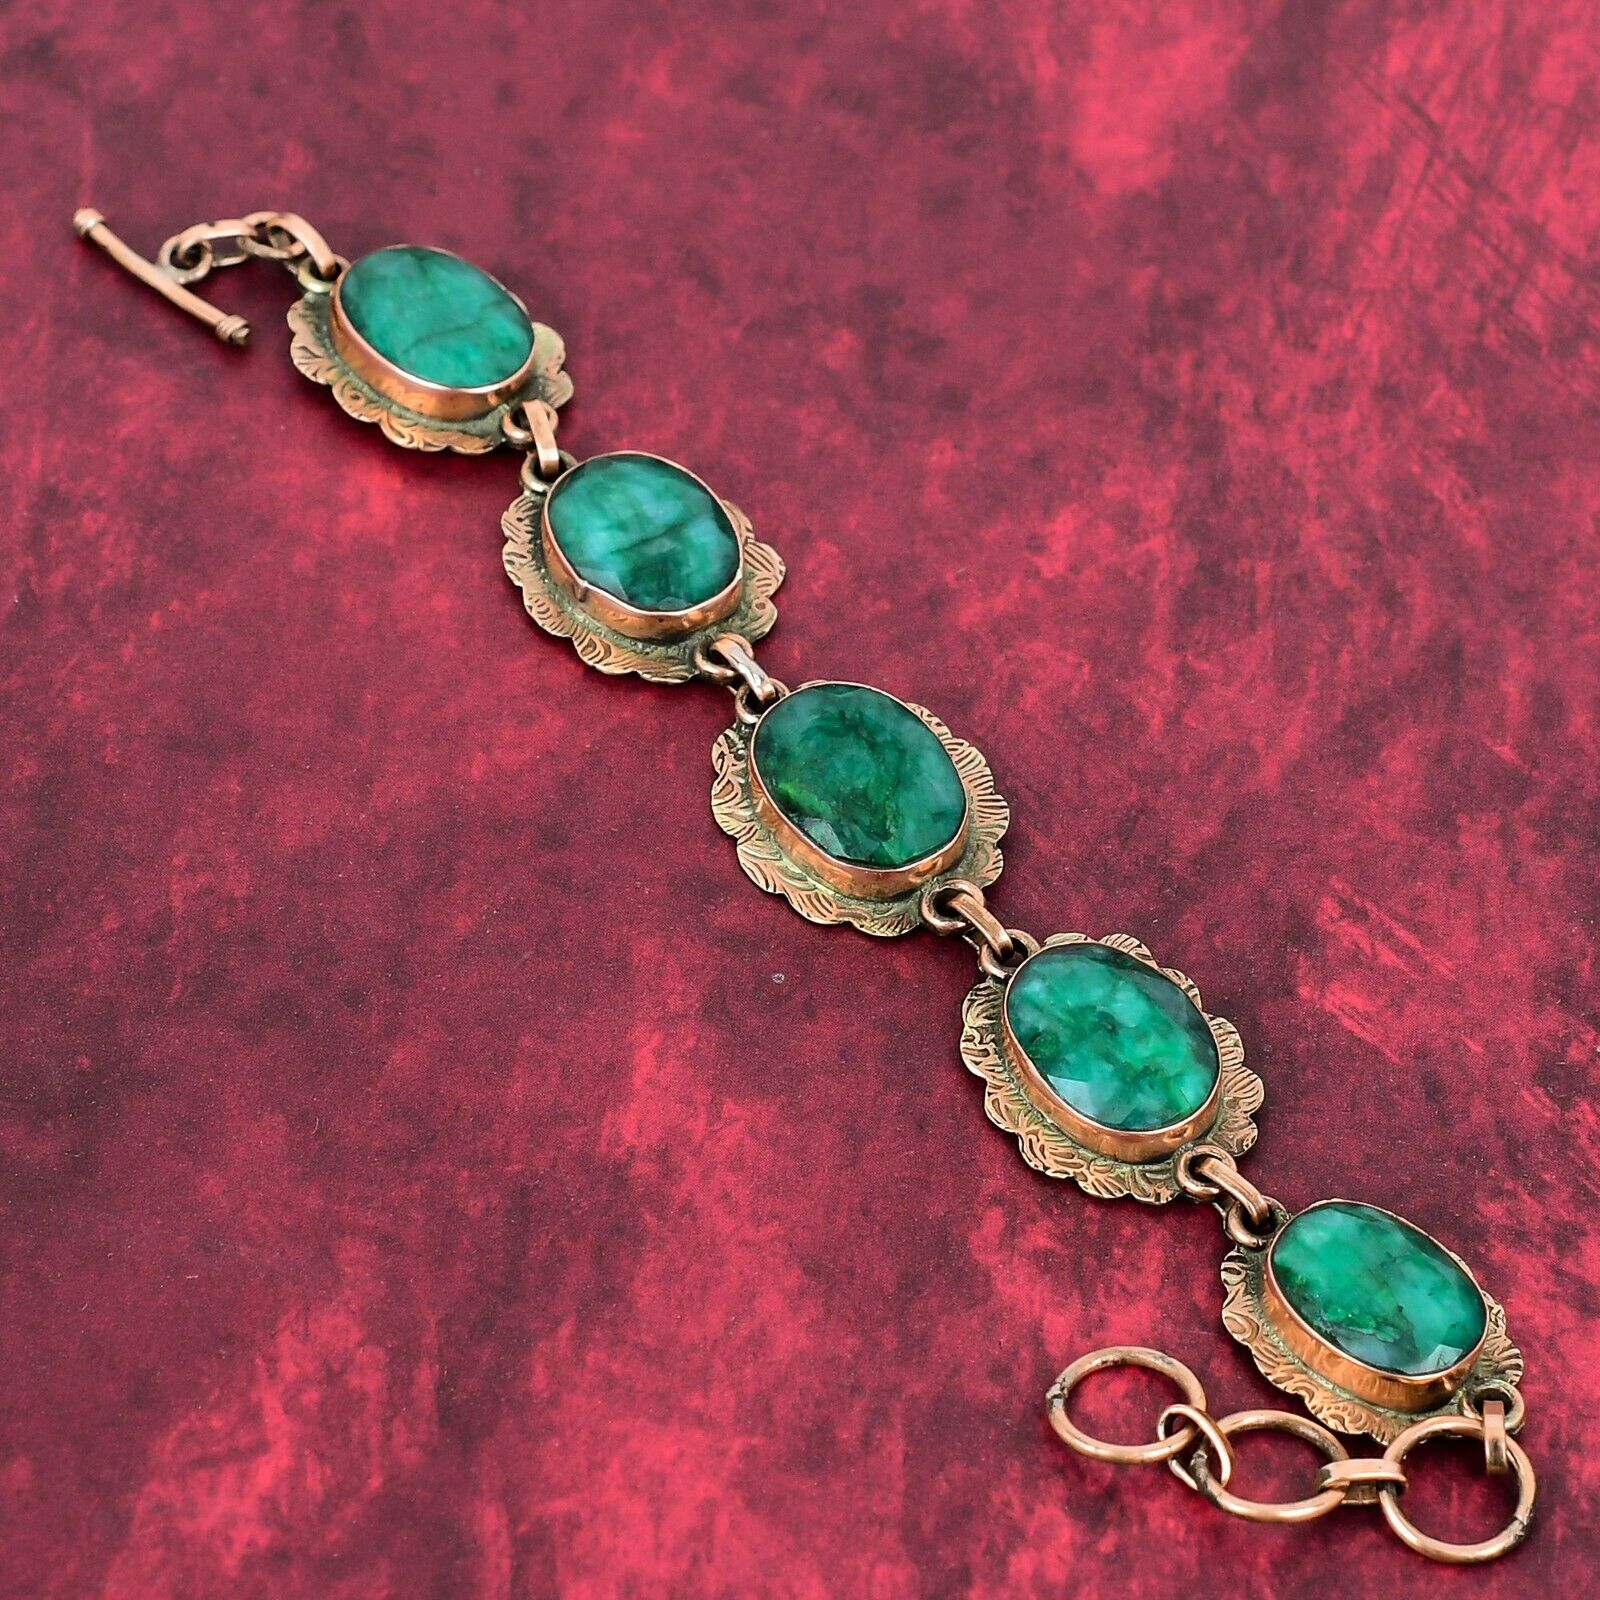 Faceted Zambian Emerald Gemstone Bracelet Copper Jewelry Adjustable Bracelet